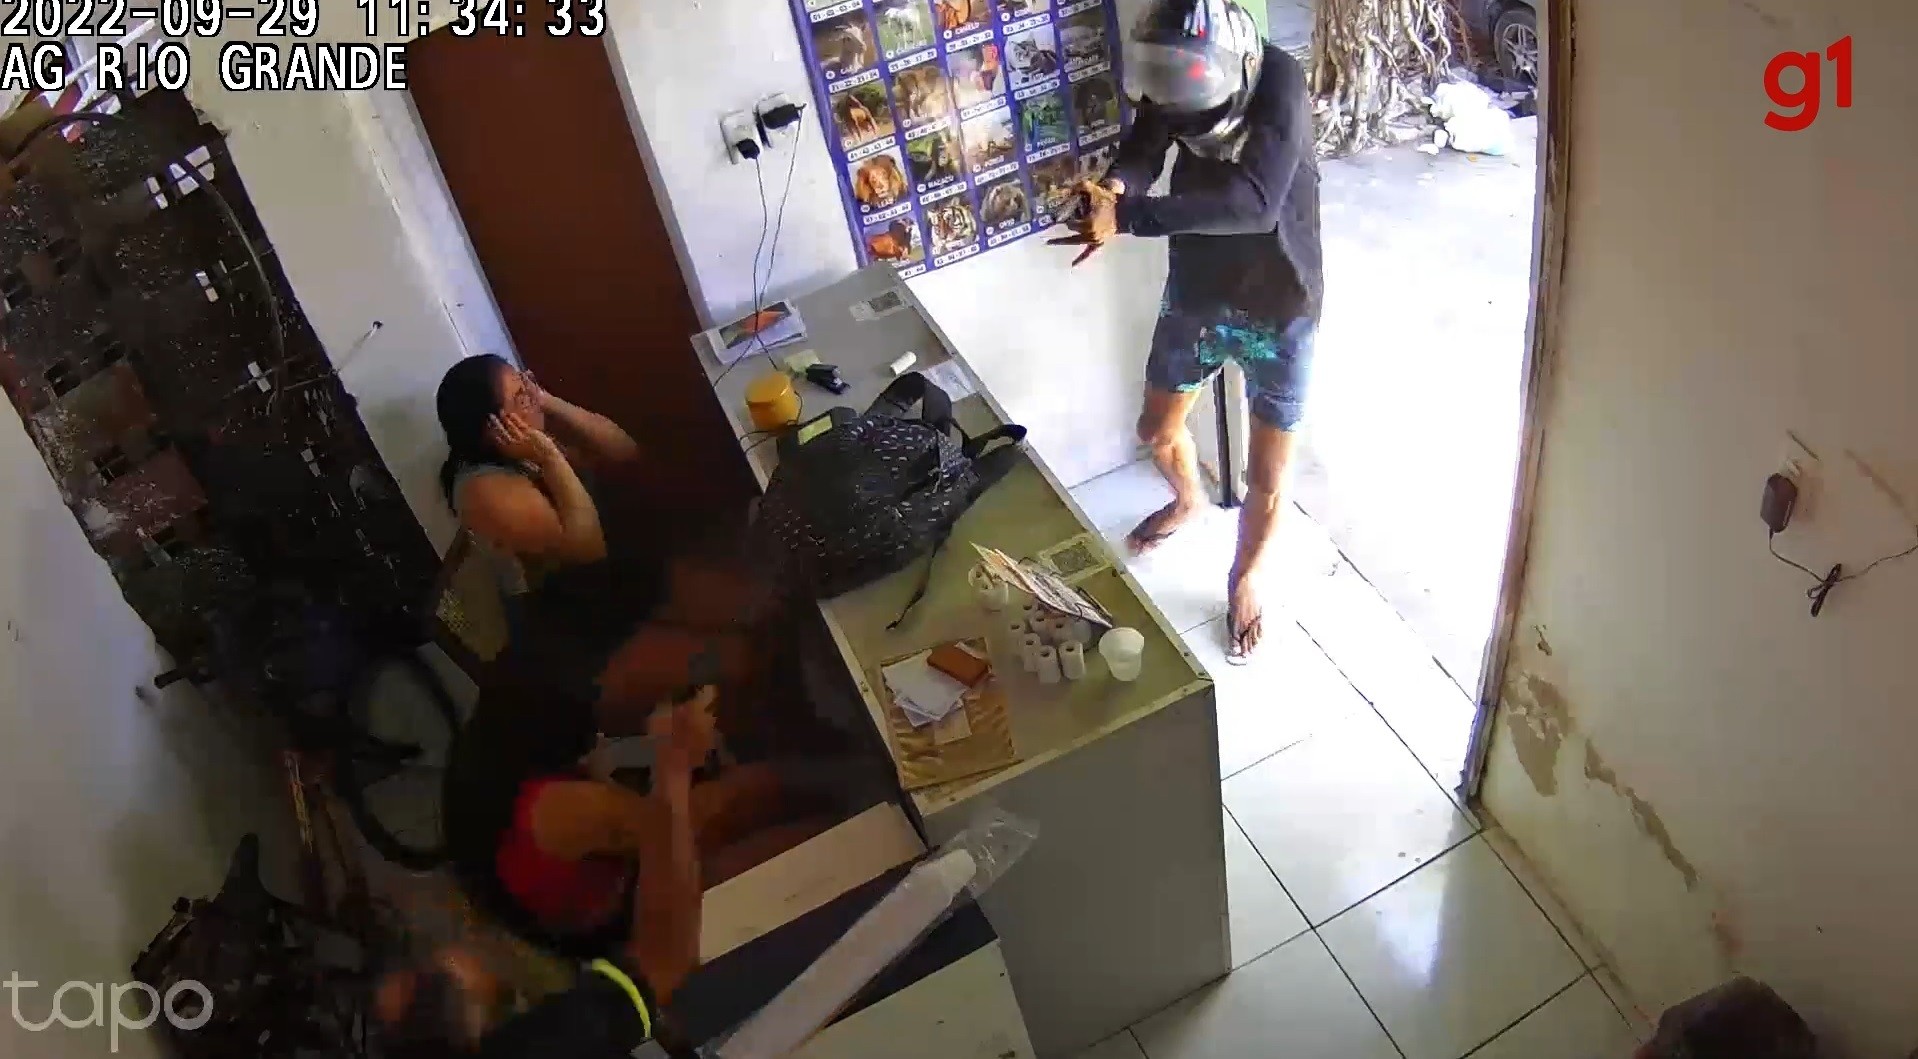 Policial militar da reserva troca tiros com suspeito durante assalto em casa de jogos em Fortaleza; vídeo